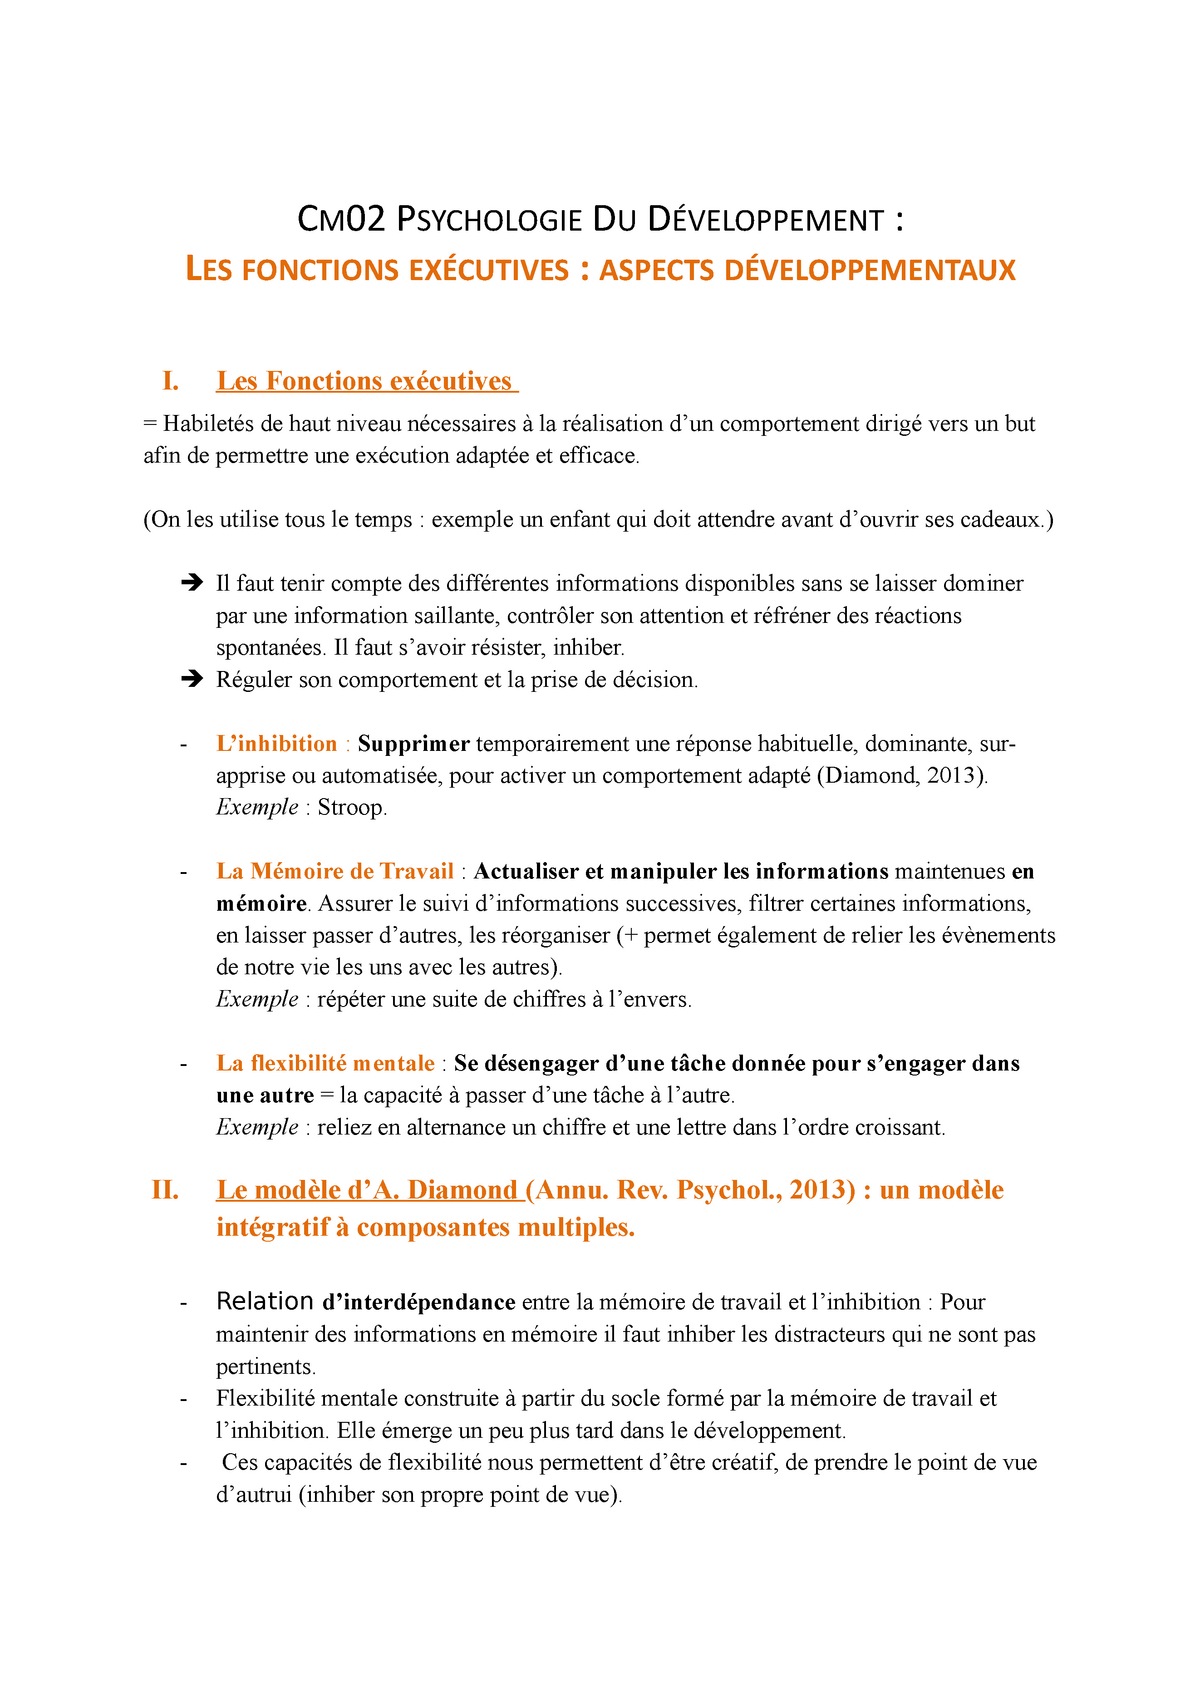 Cm02 Psycho Du Dev Cm02 Psychologie Du Developpement Les Fonctions Executives Aspects Studocu